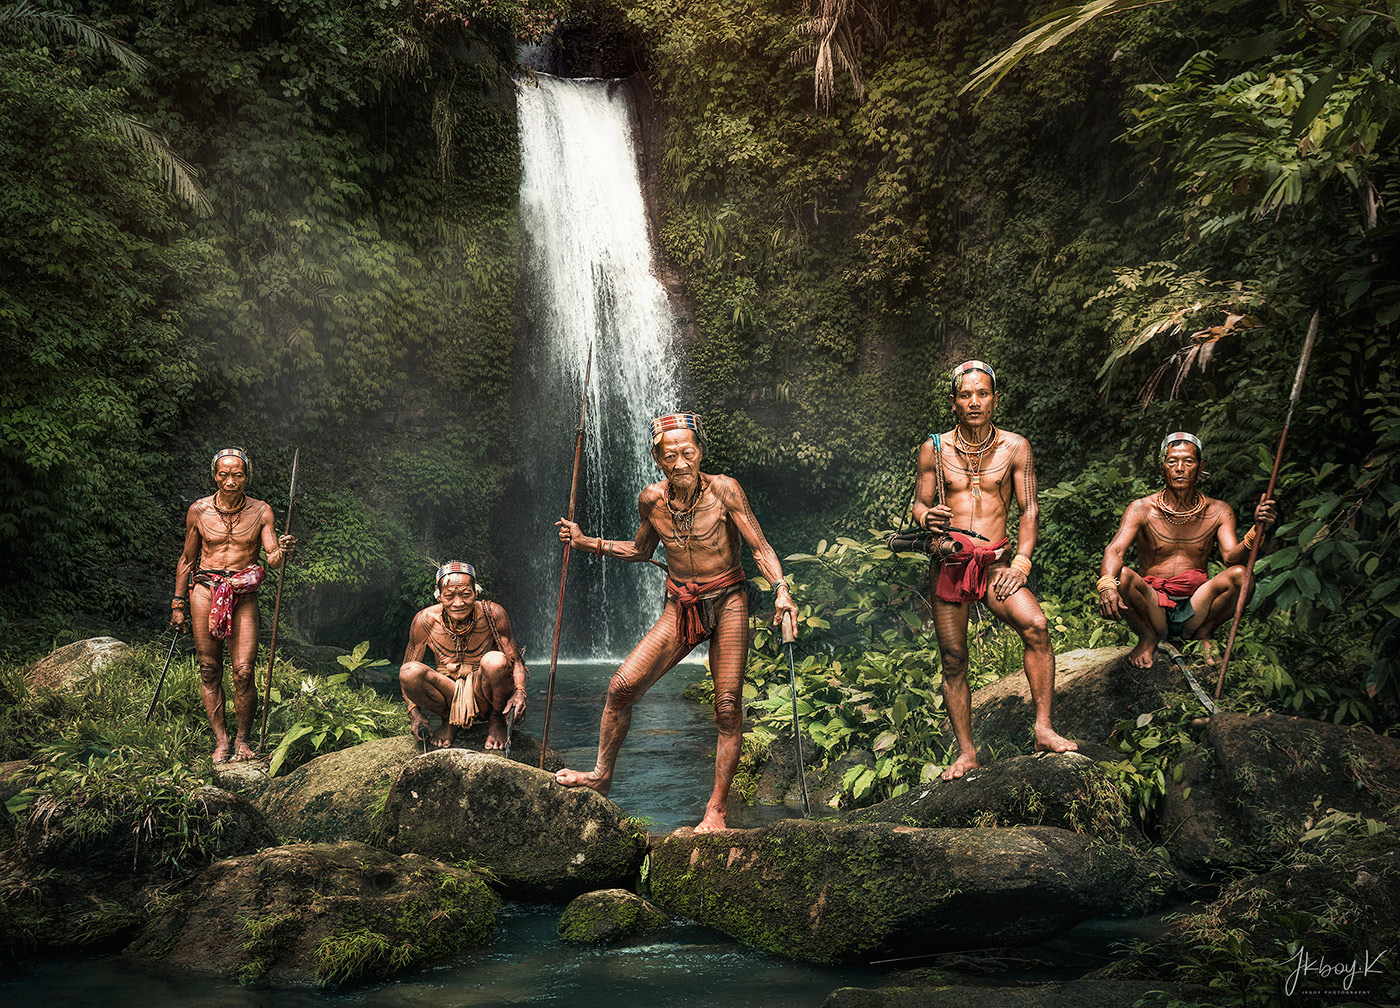 Mentawai : วันหนึ่งฉันเดินเข้าป่า...จนได้พบชนเผ่าโบราณ - Pantip